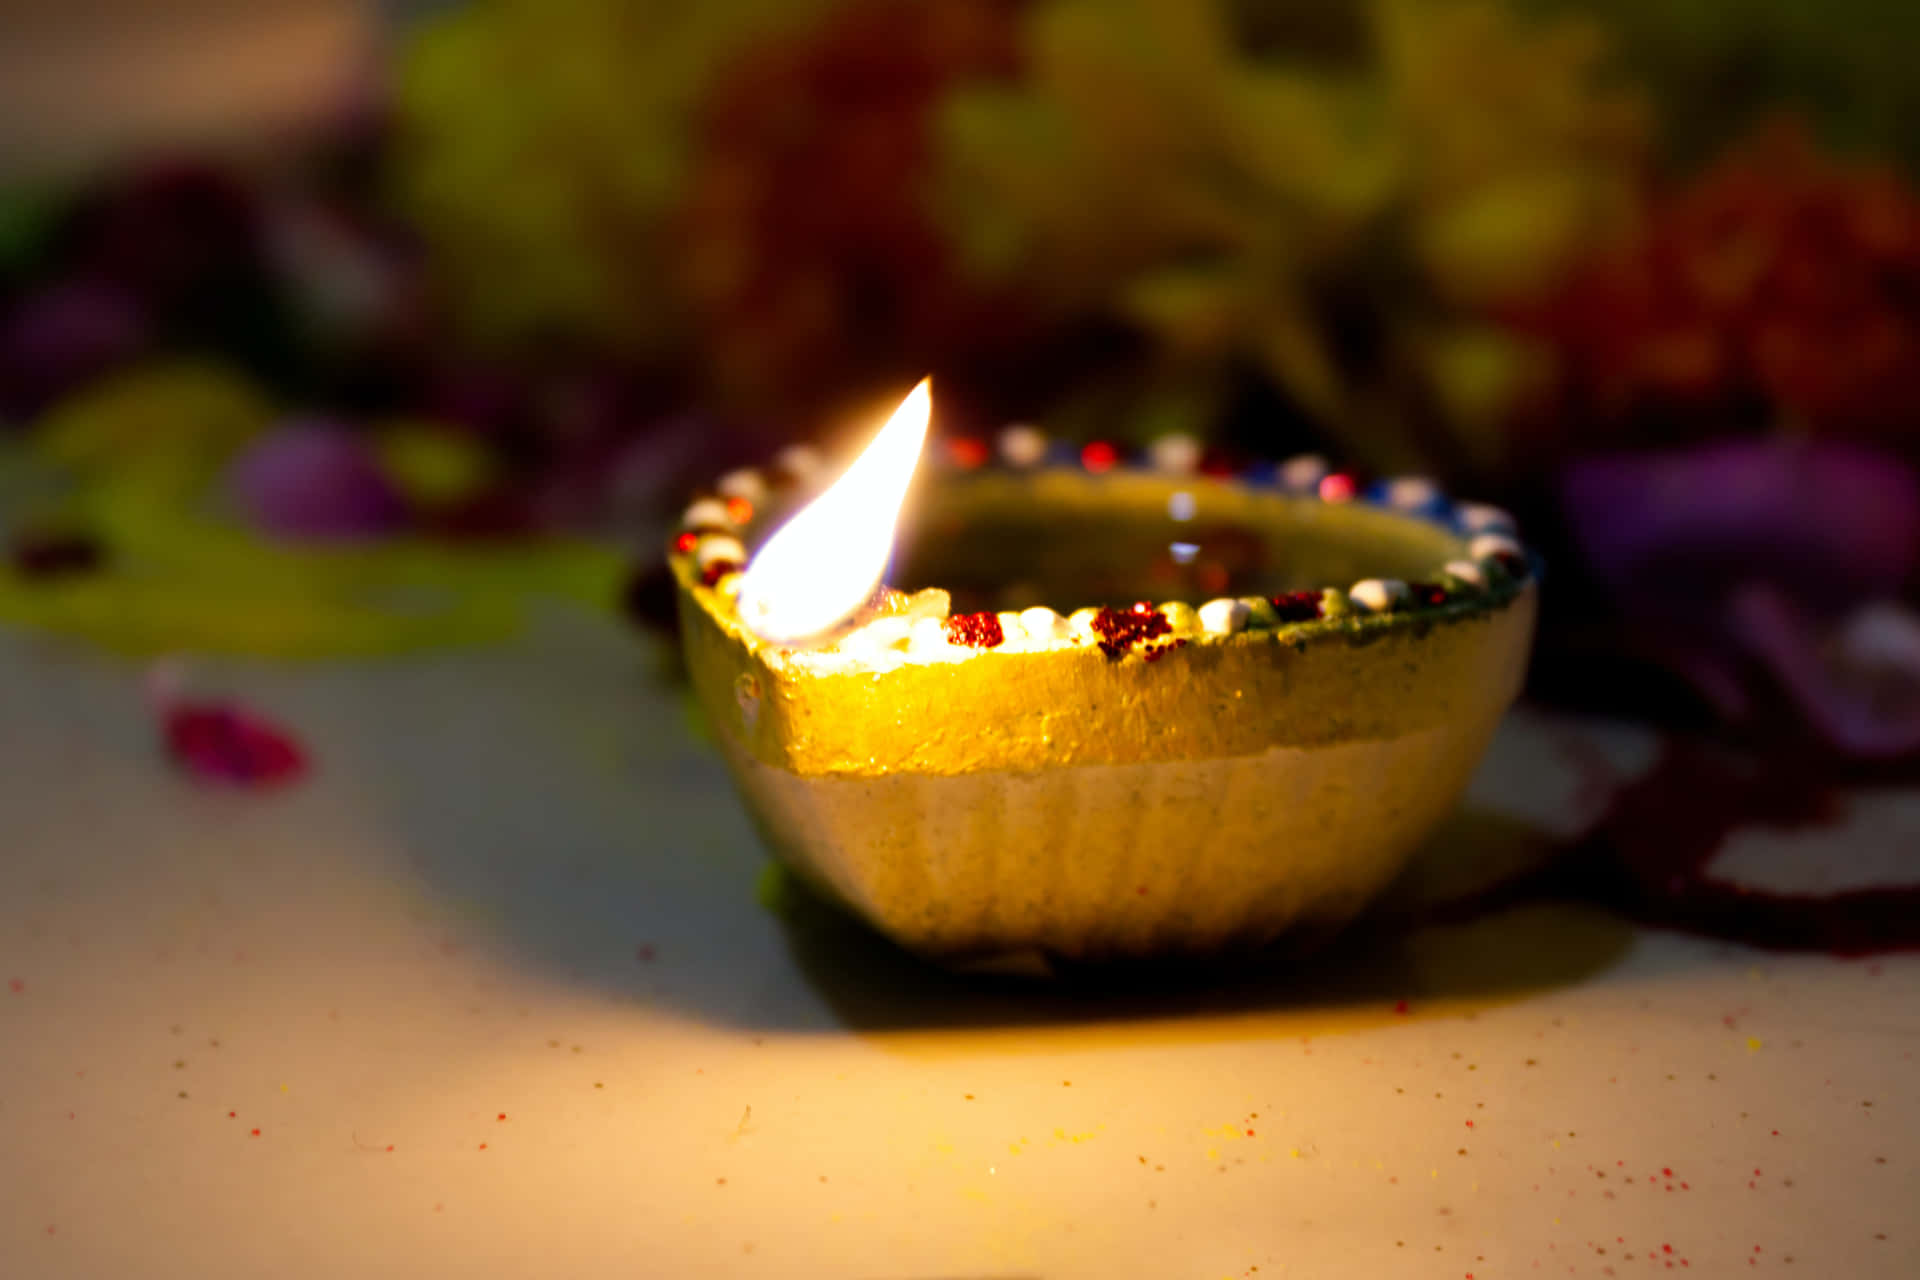 "Illuminating Diwali Celebration"